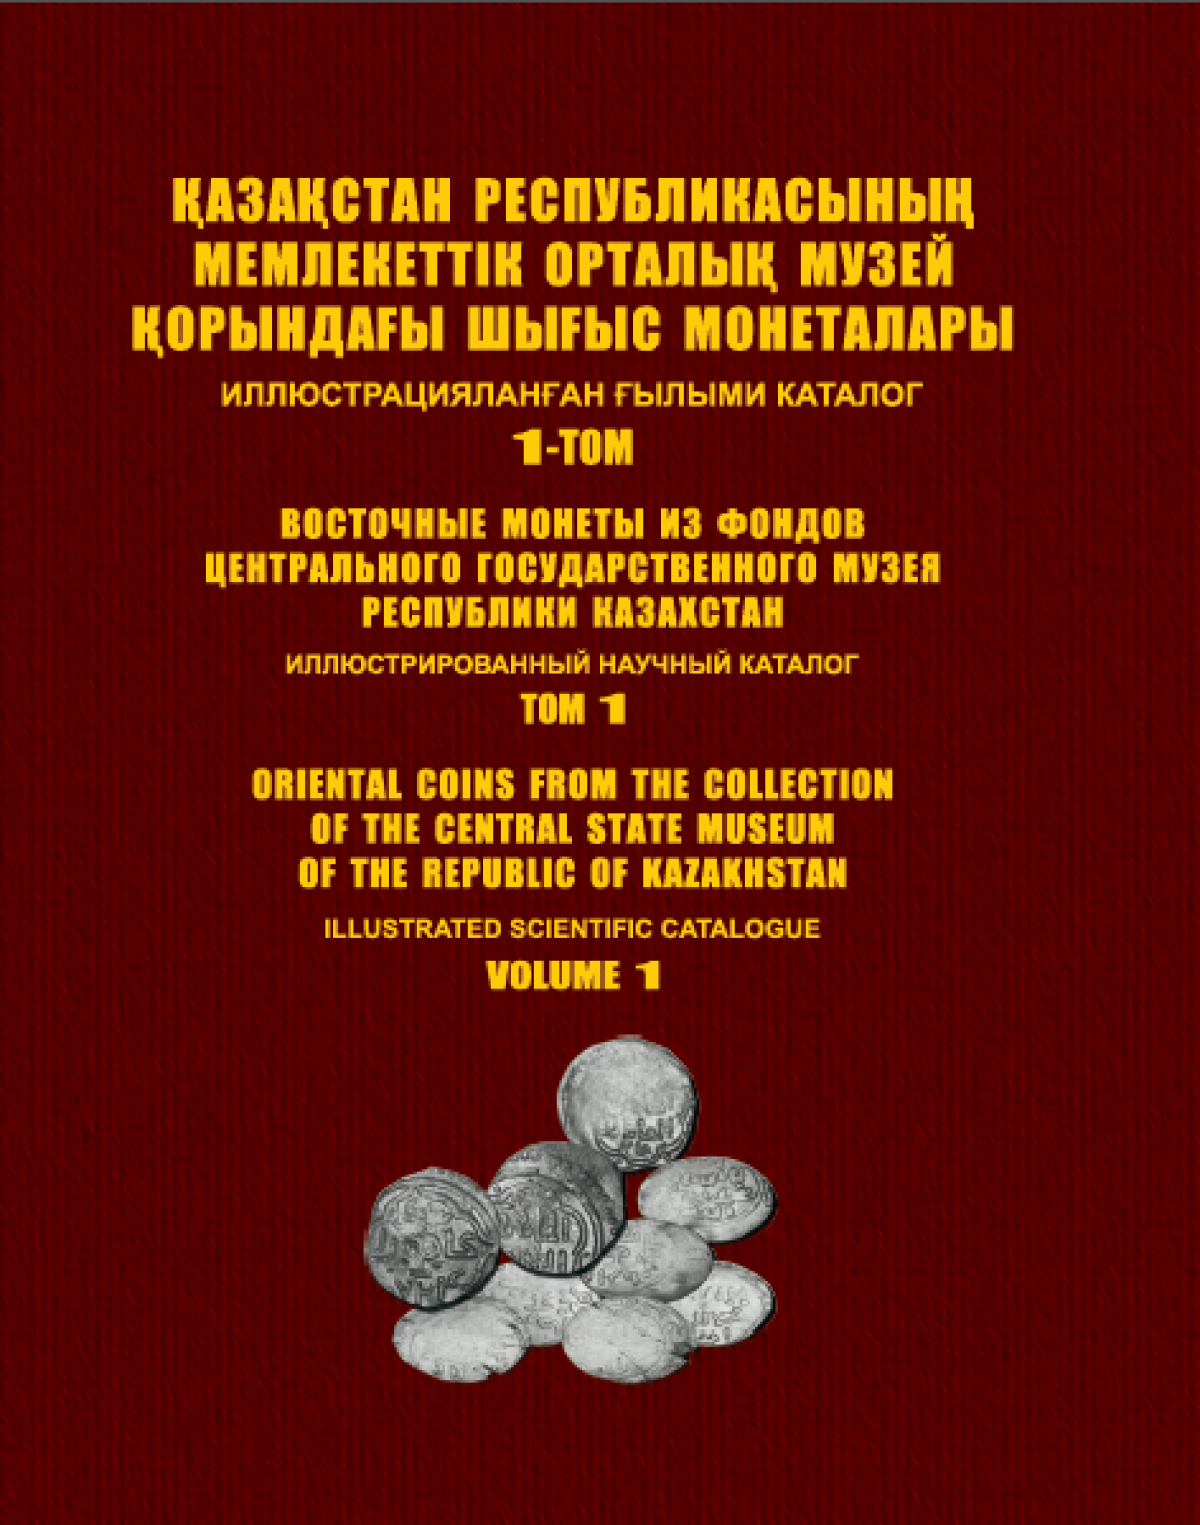 Қазақстан Республикасының Мемлекеттік орталық музей қорындағы шығыс монеталары: шағатай монеталарының Алматы көмбесі